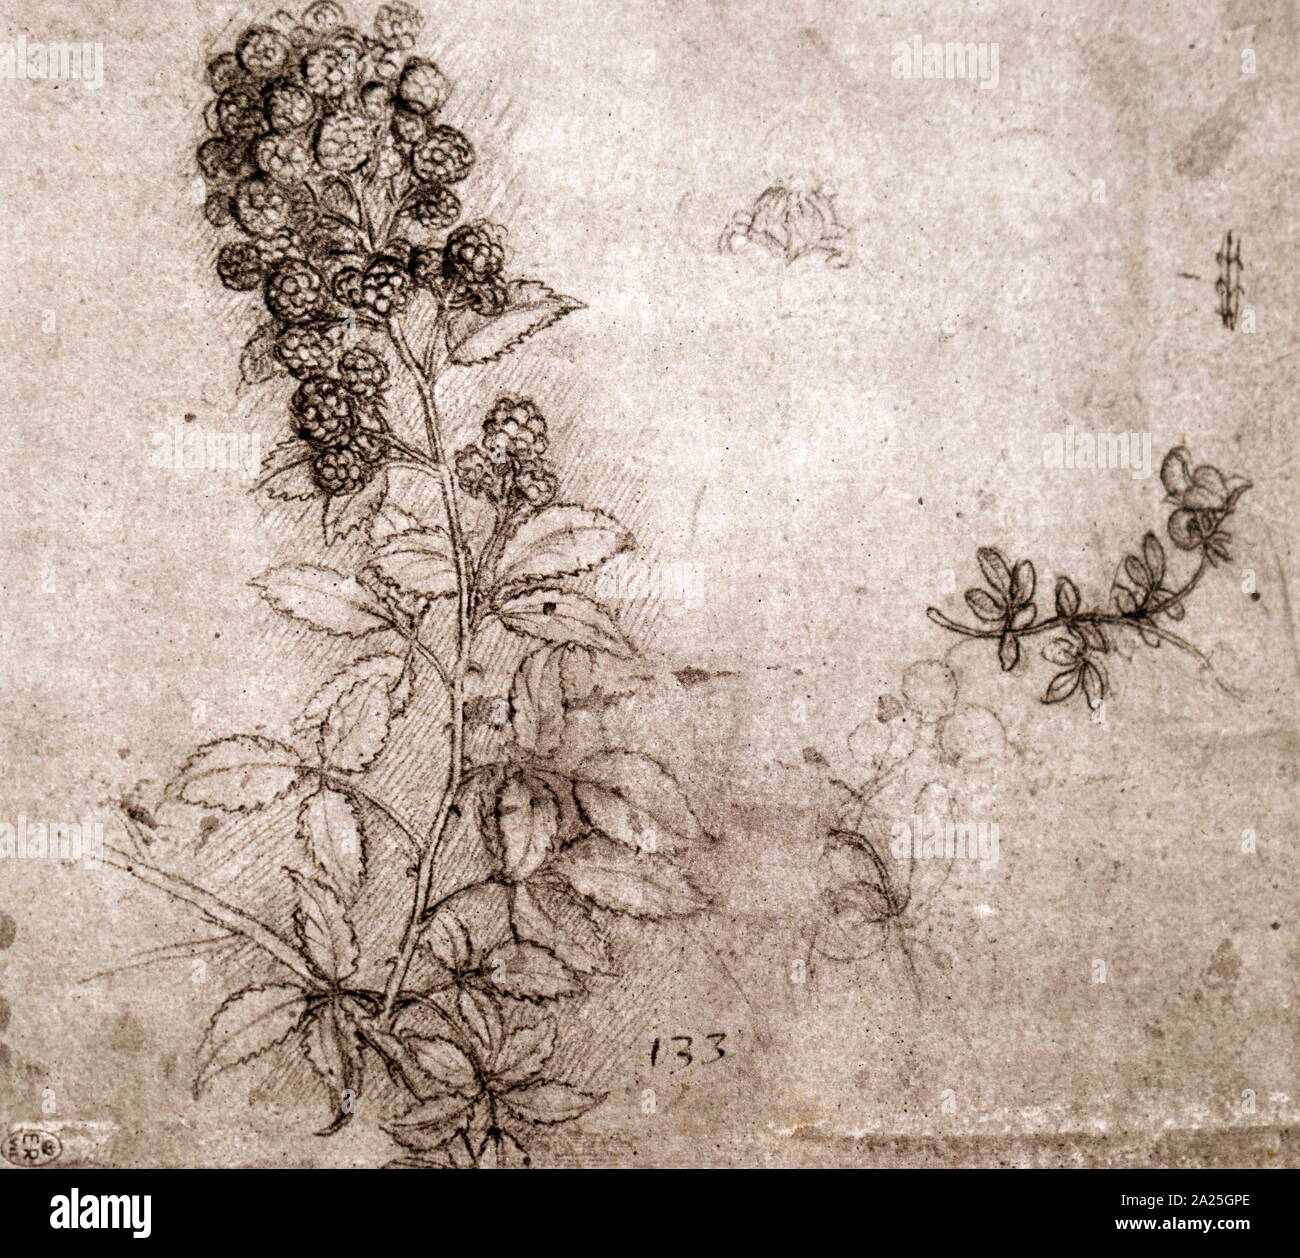 Rami di blackberry da Leonardo da Vinci. Leonardo di ser Piero da Vinci (1452-1519) un polymath italiana del Rinascimento. Foto Stock